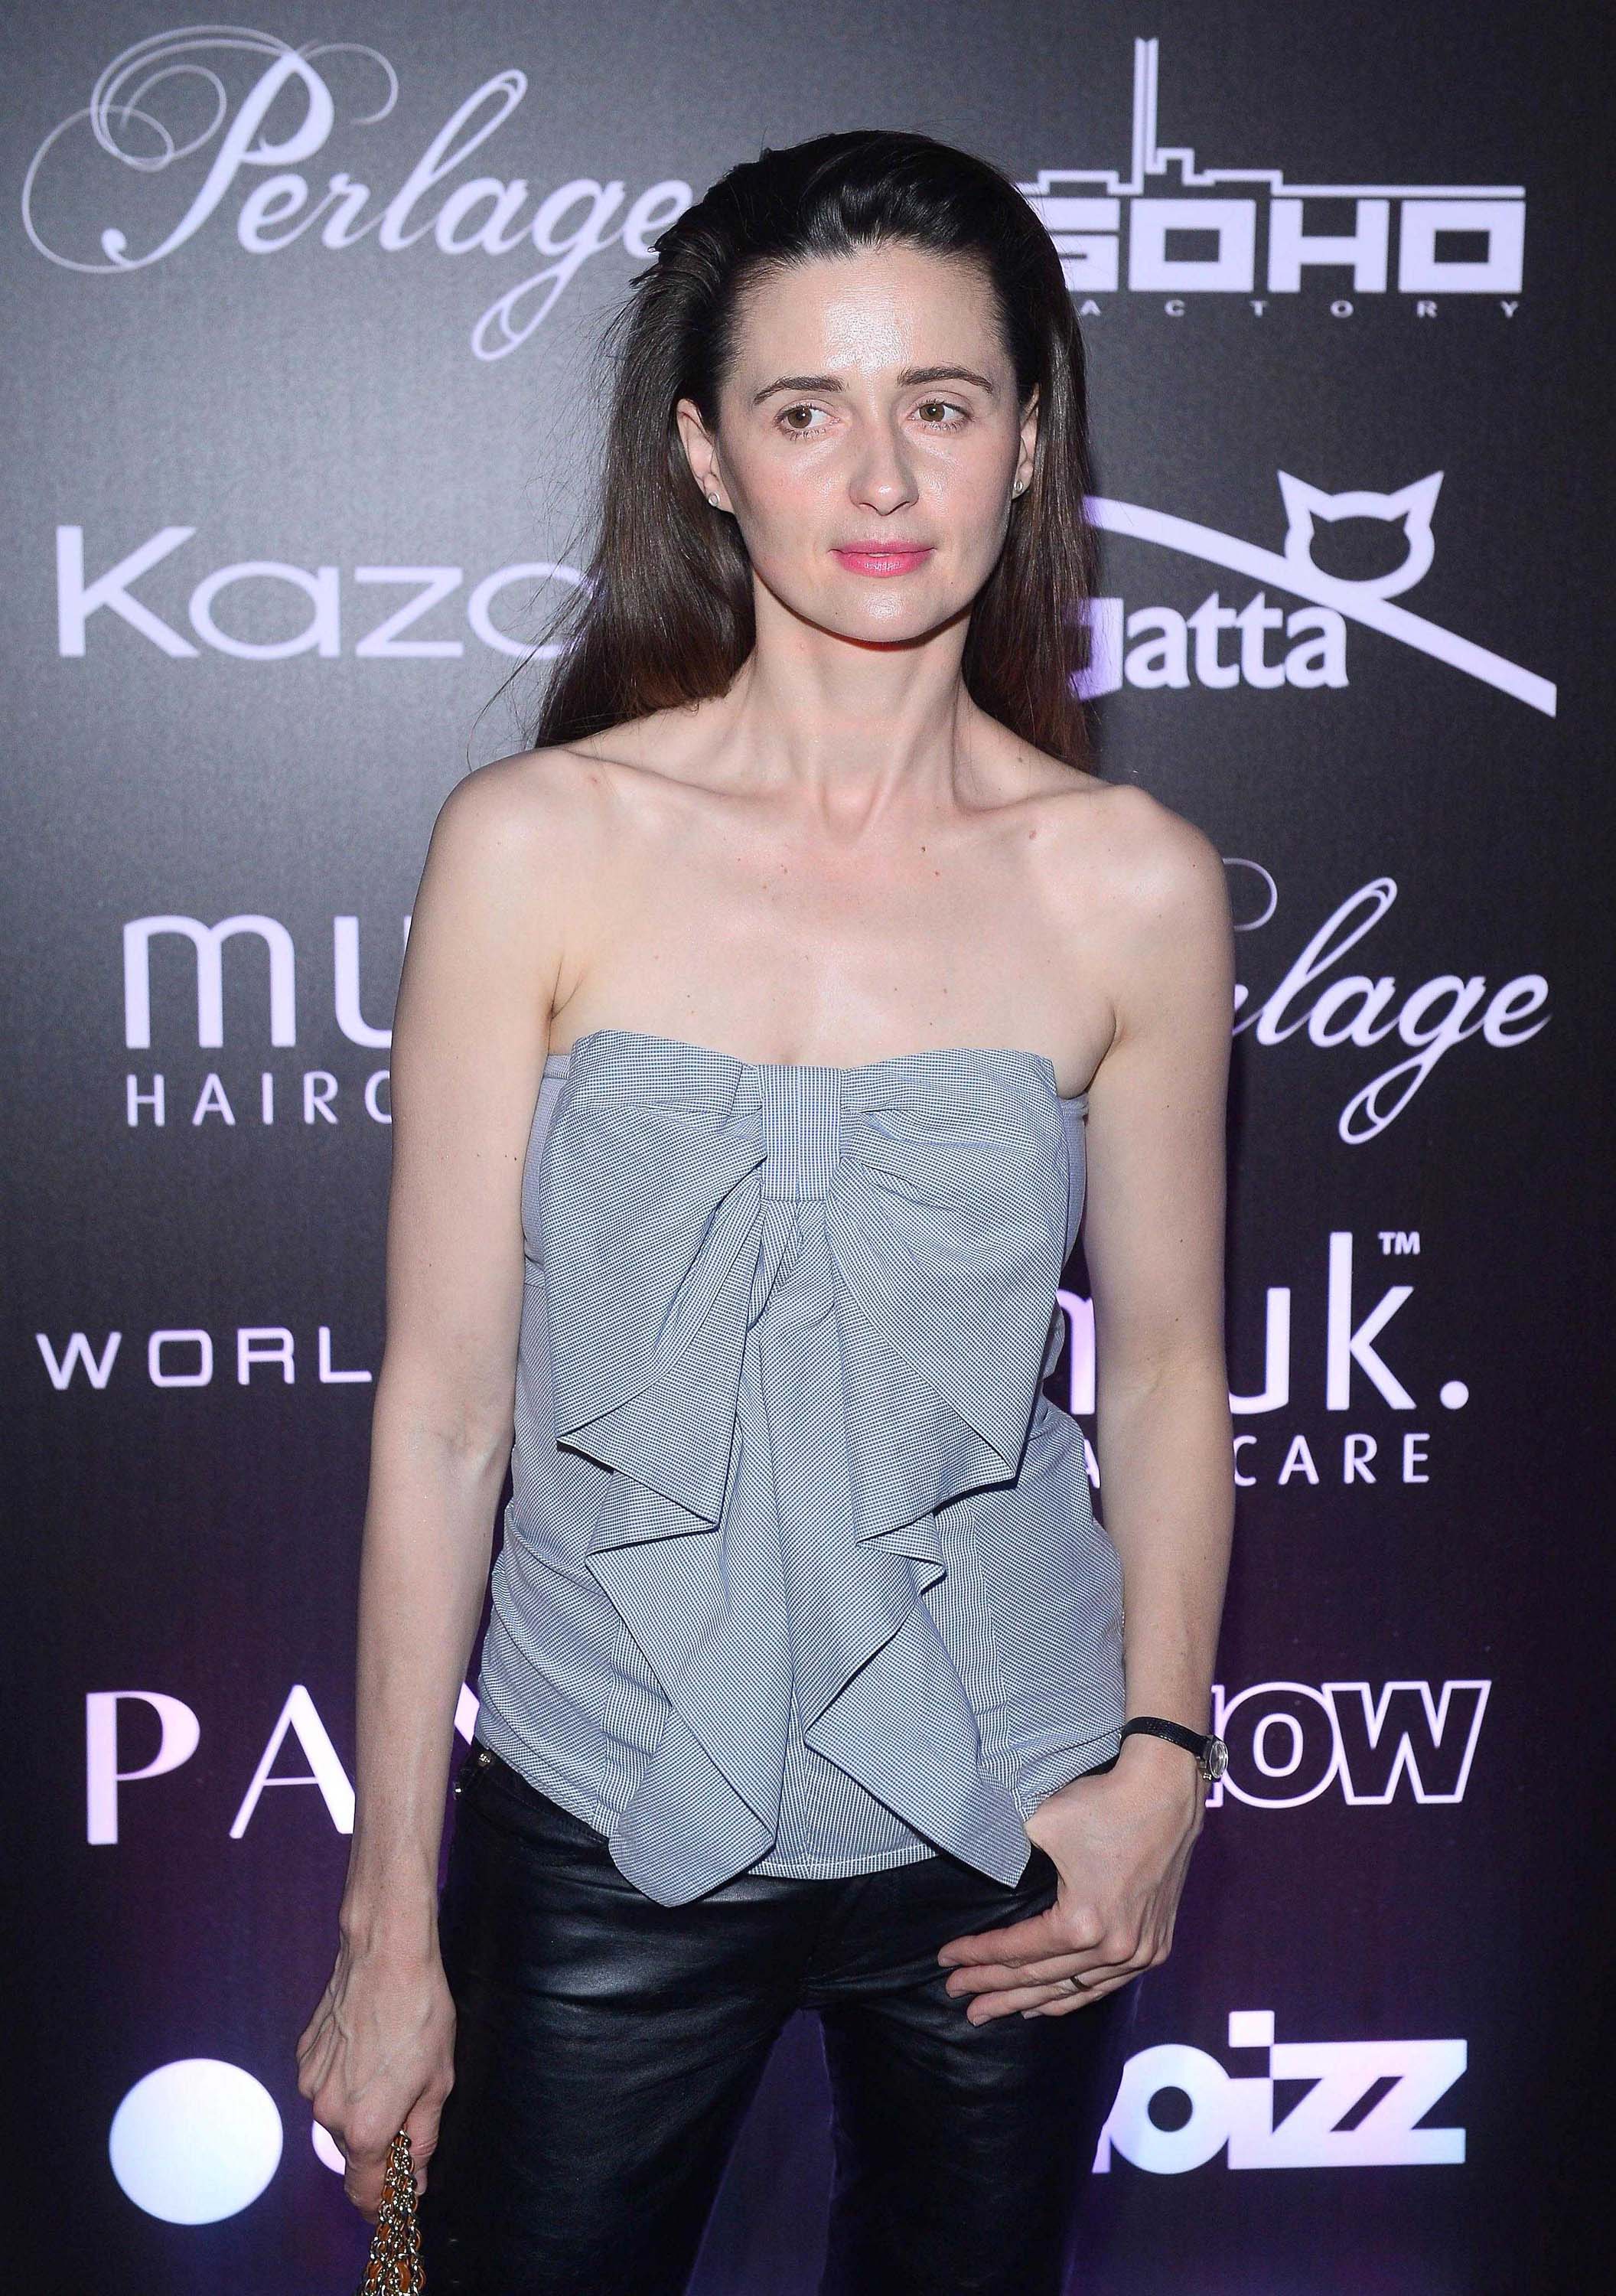 Agnieszka Grochowska attends the Pokaz Roberta Kupisza Fashion Show